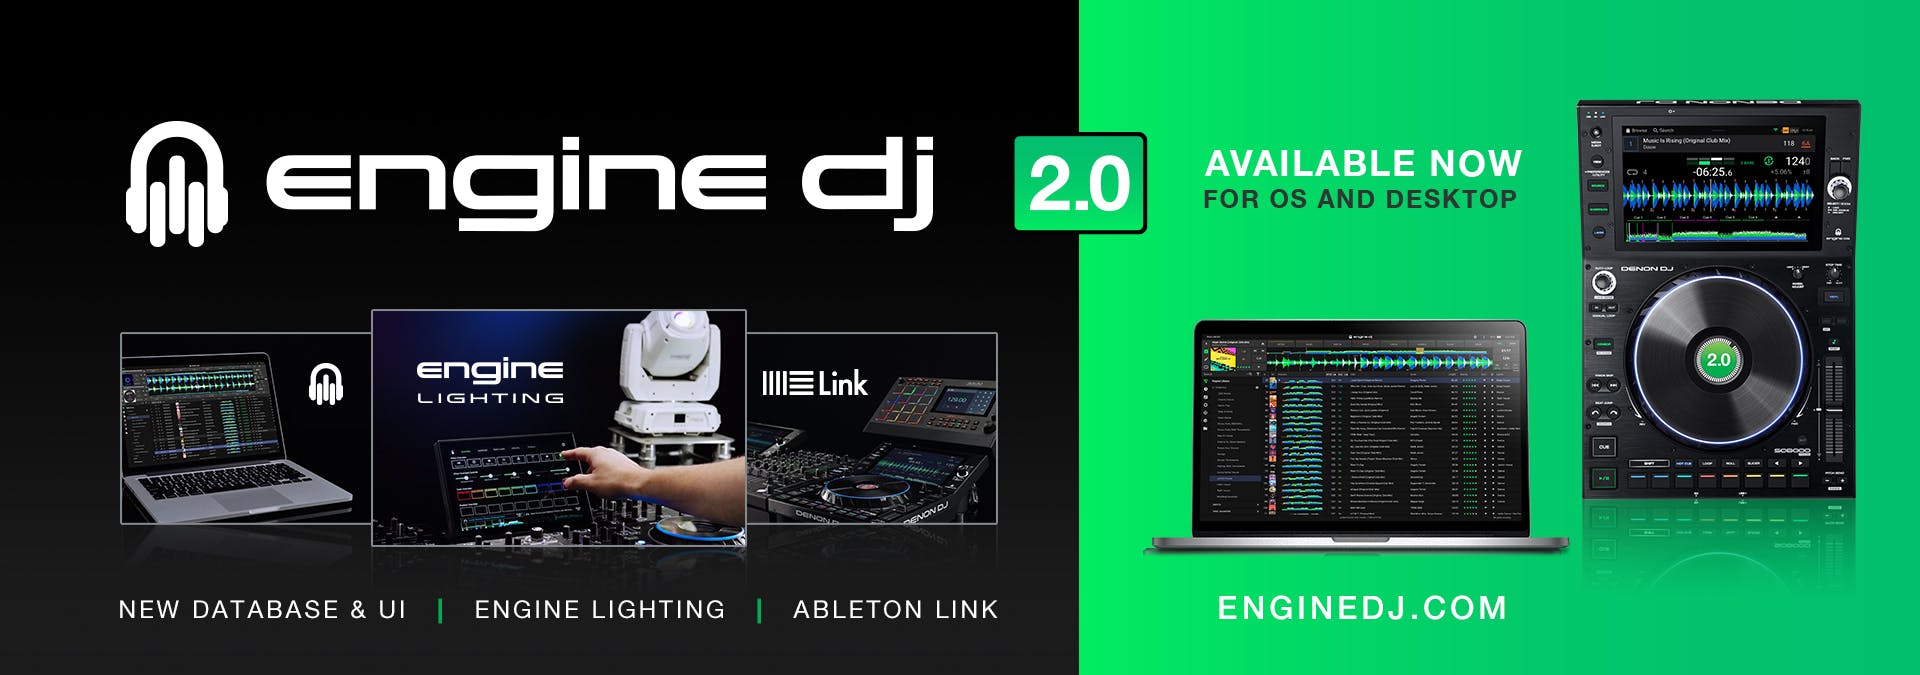 Engine DJ 2.0 Announcement Social Image